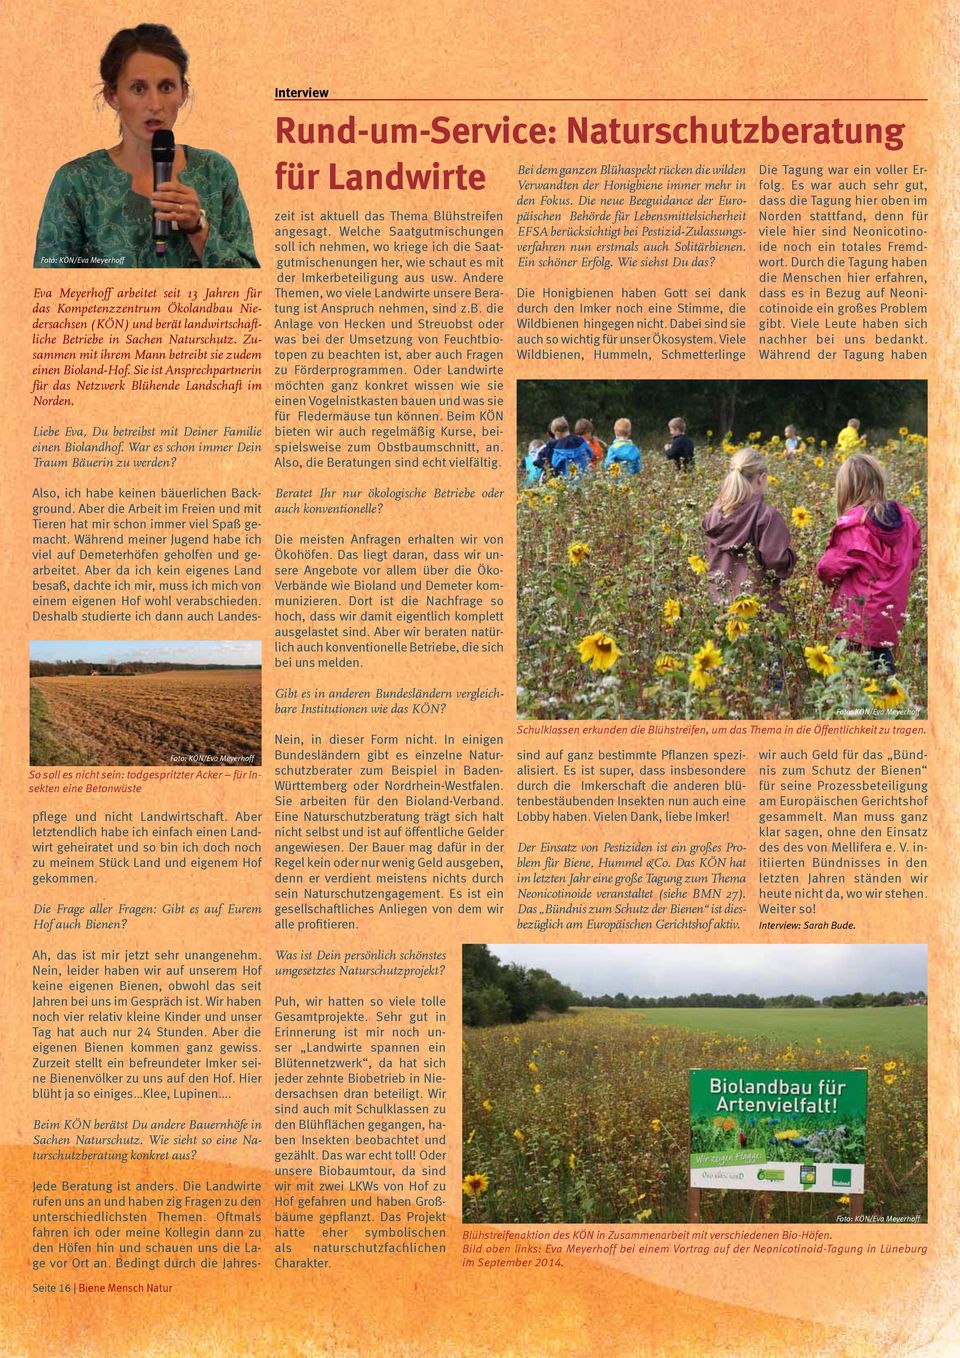 War es schon immer Dein Traum Bäuerin zu werden? Interview Rund-um-Service: Naturschutzberatung für Landwirte zeit ist aktuell das Thema Blühstreifen angesagt.